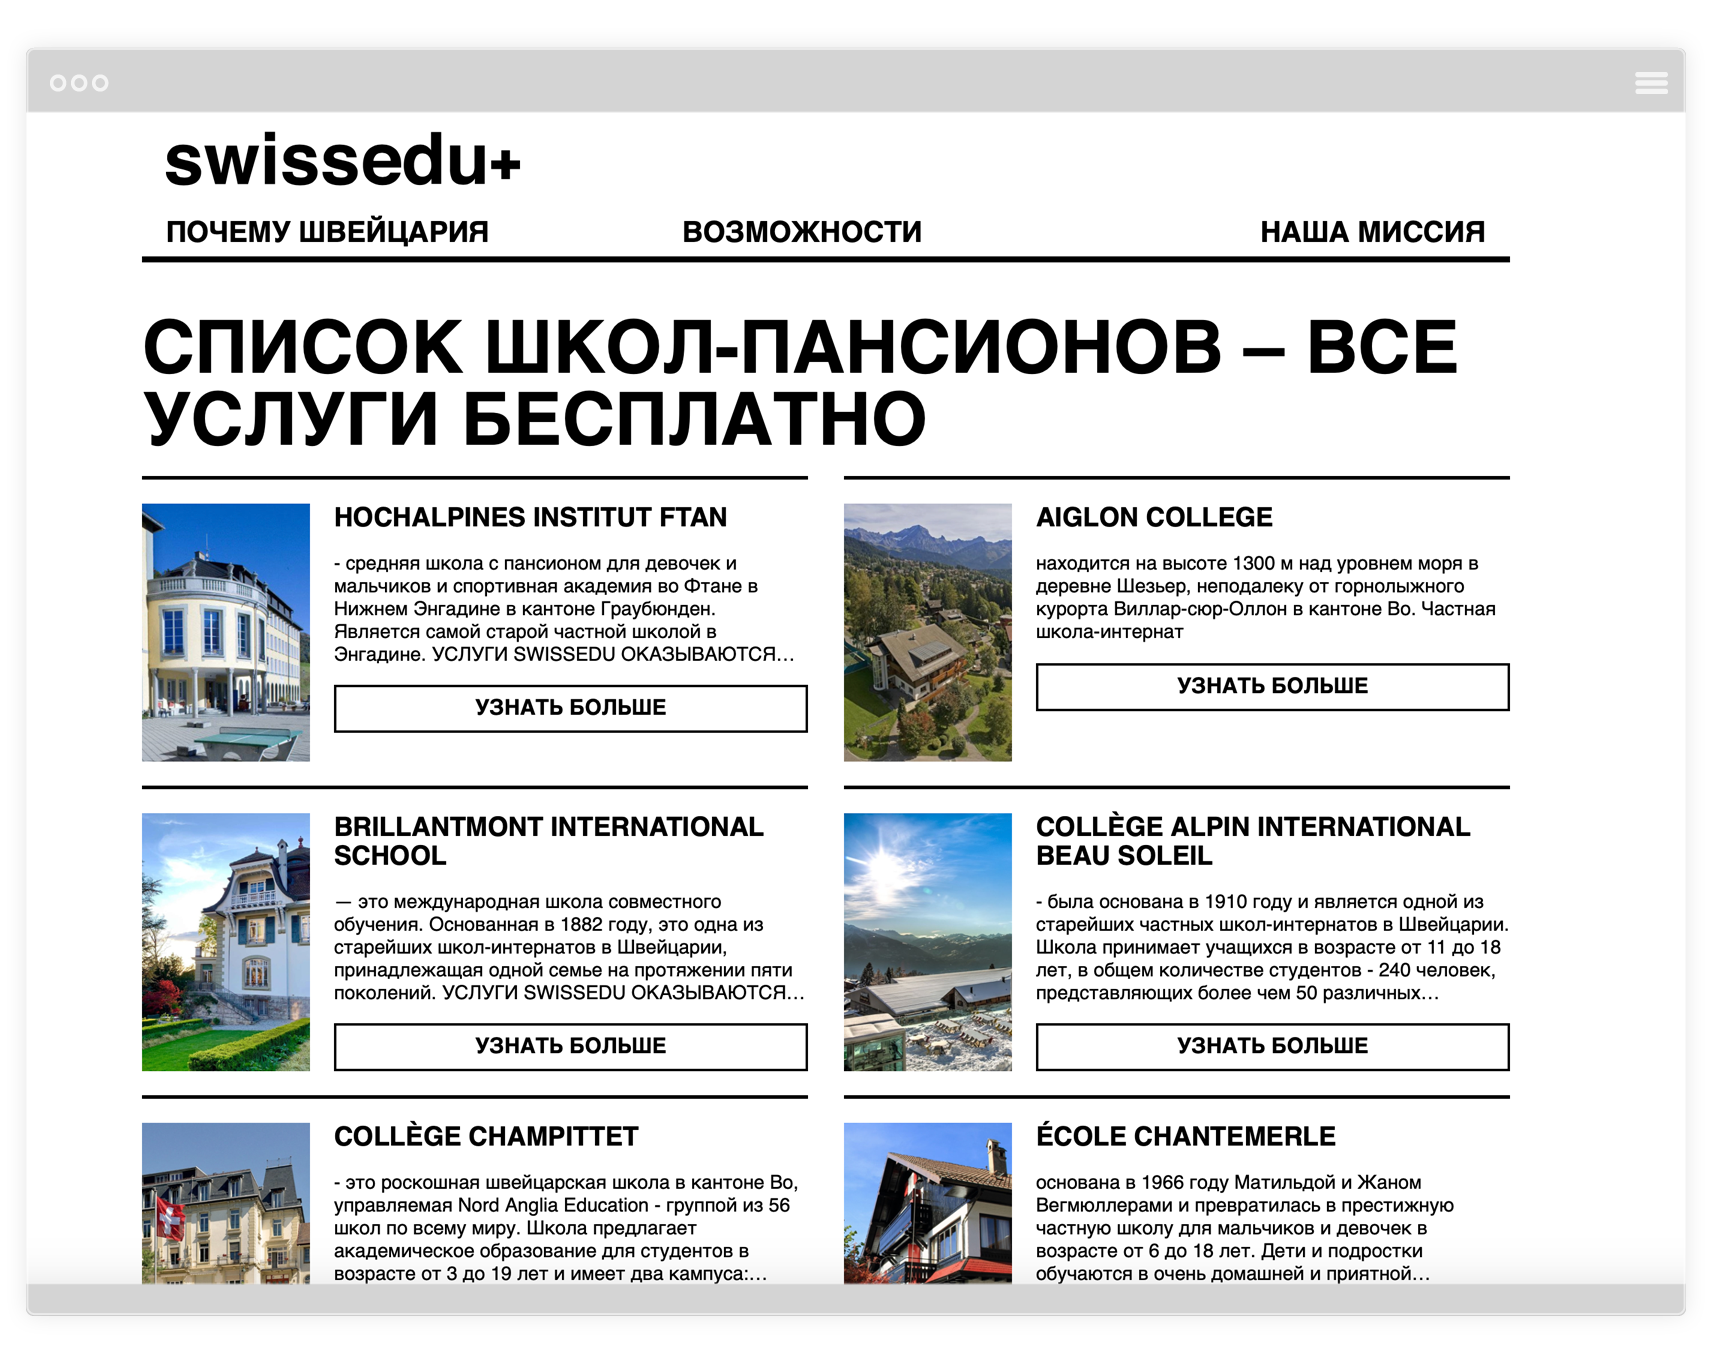 Swissedu+ - Список школ-пансионов